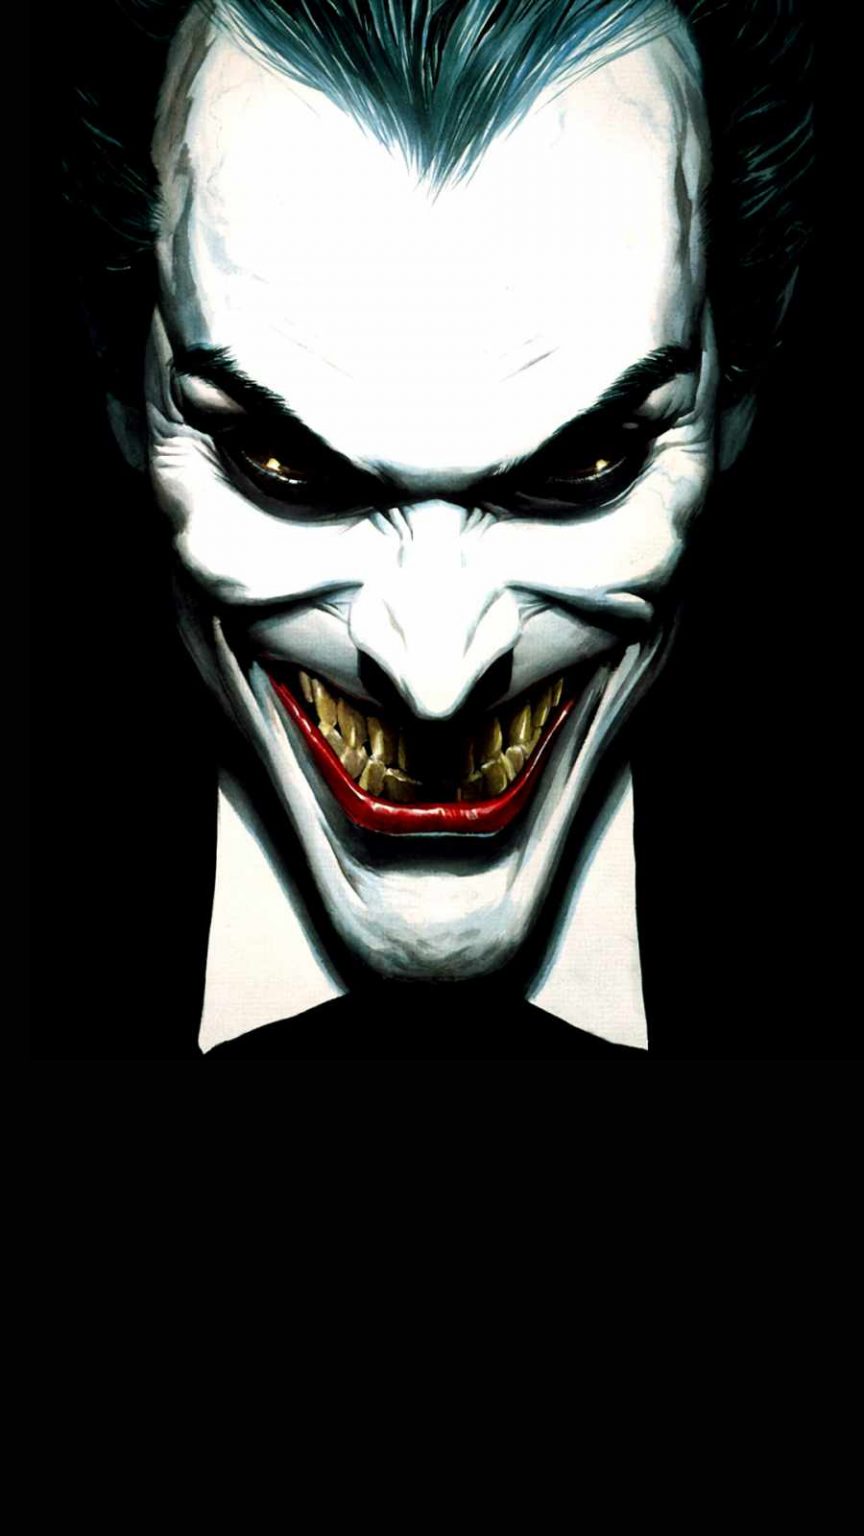 Joker Smile iPhone Wallpaper » iPhone Wallpapers